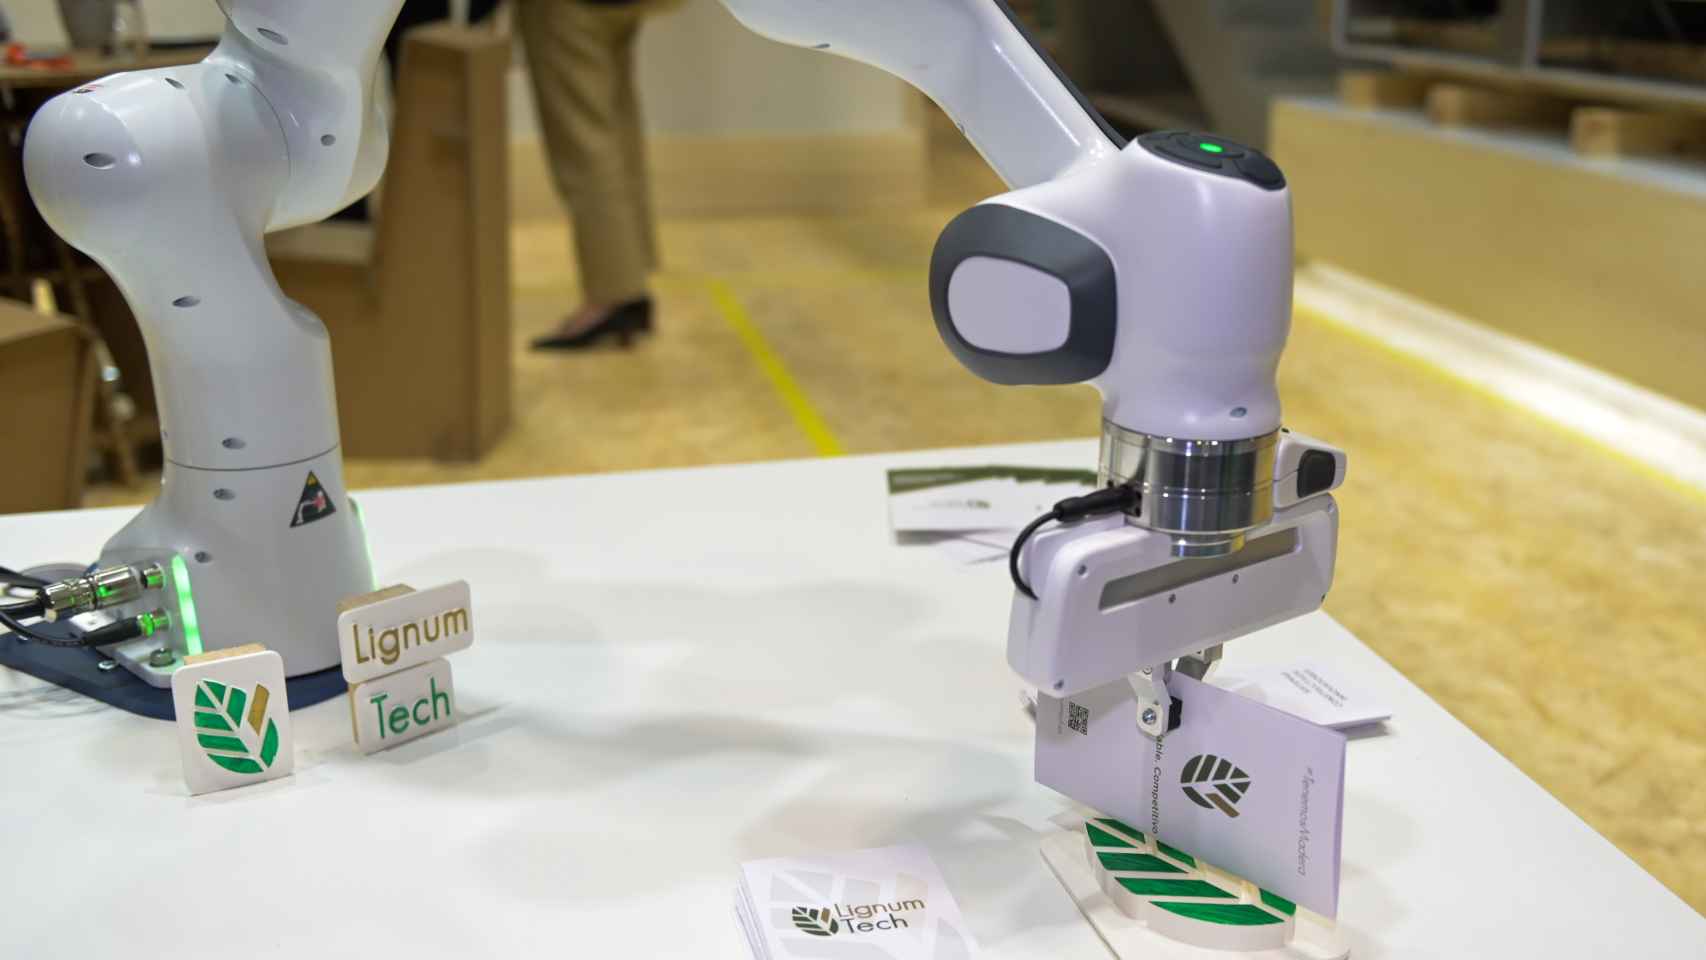 Brazo robótico de Lignum Tech en Rebuild 2021